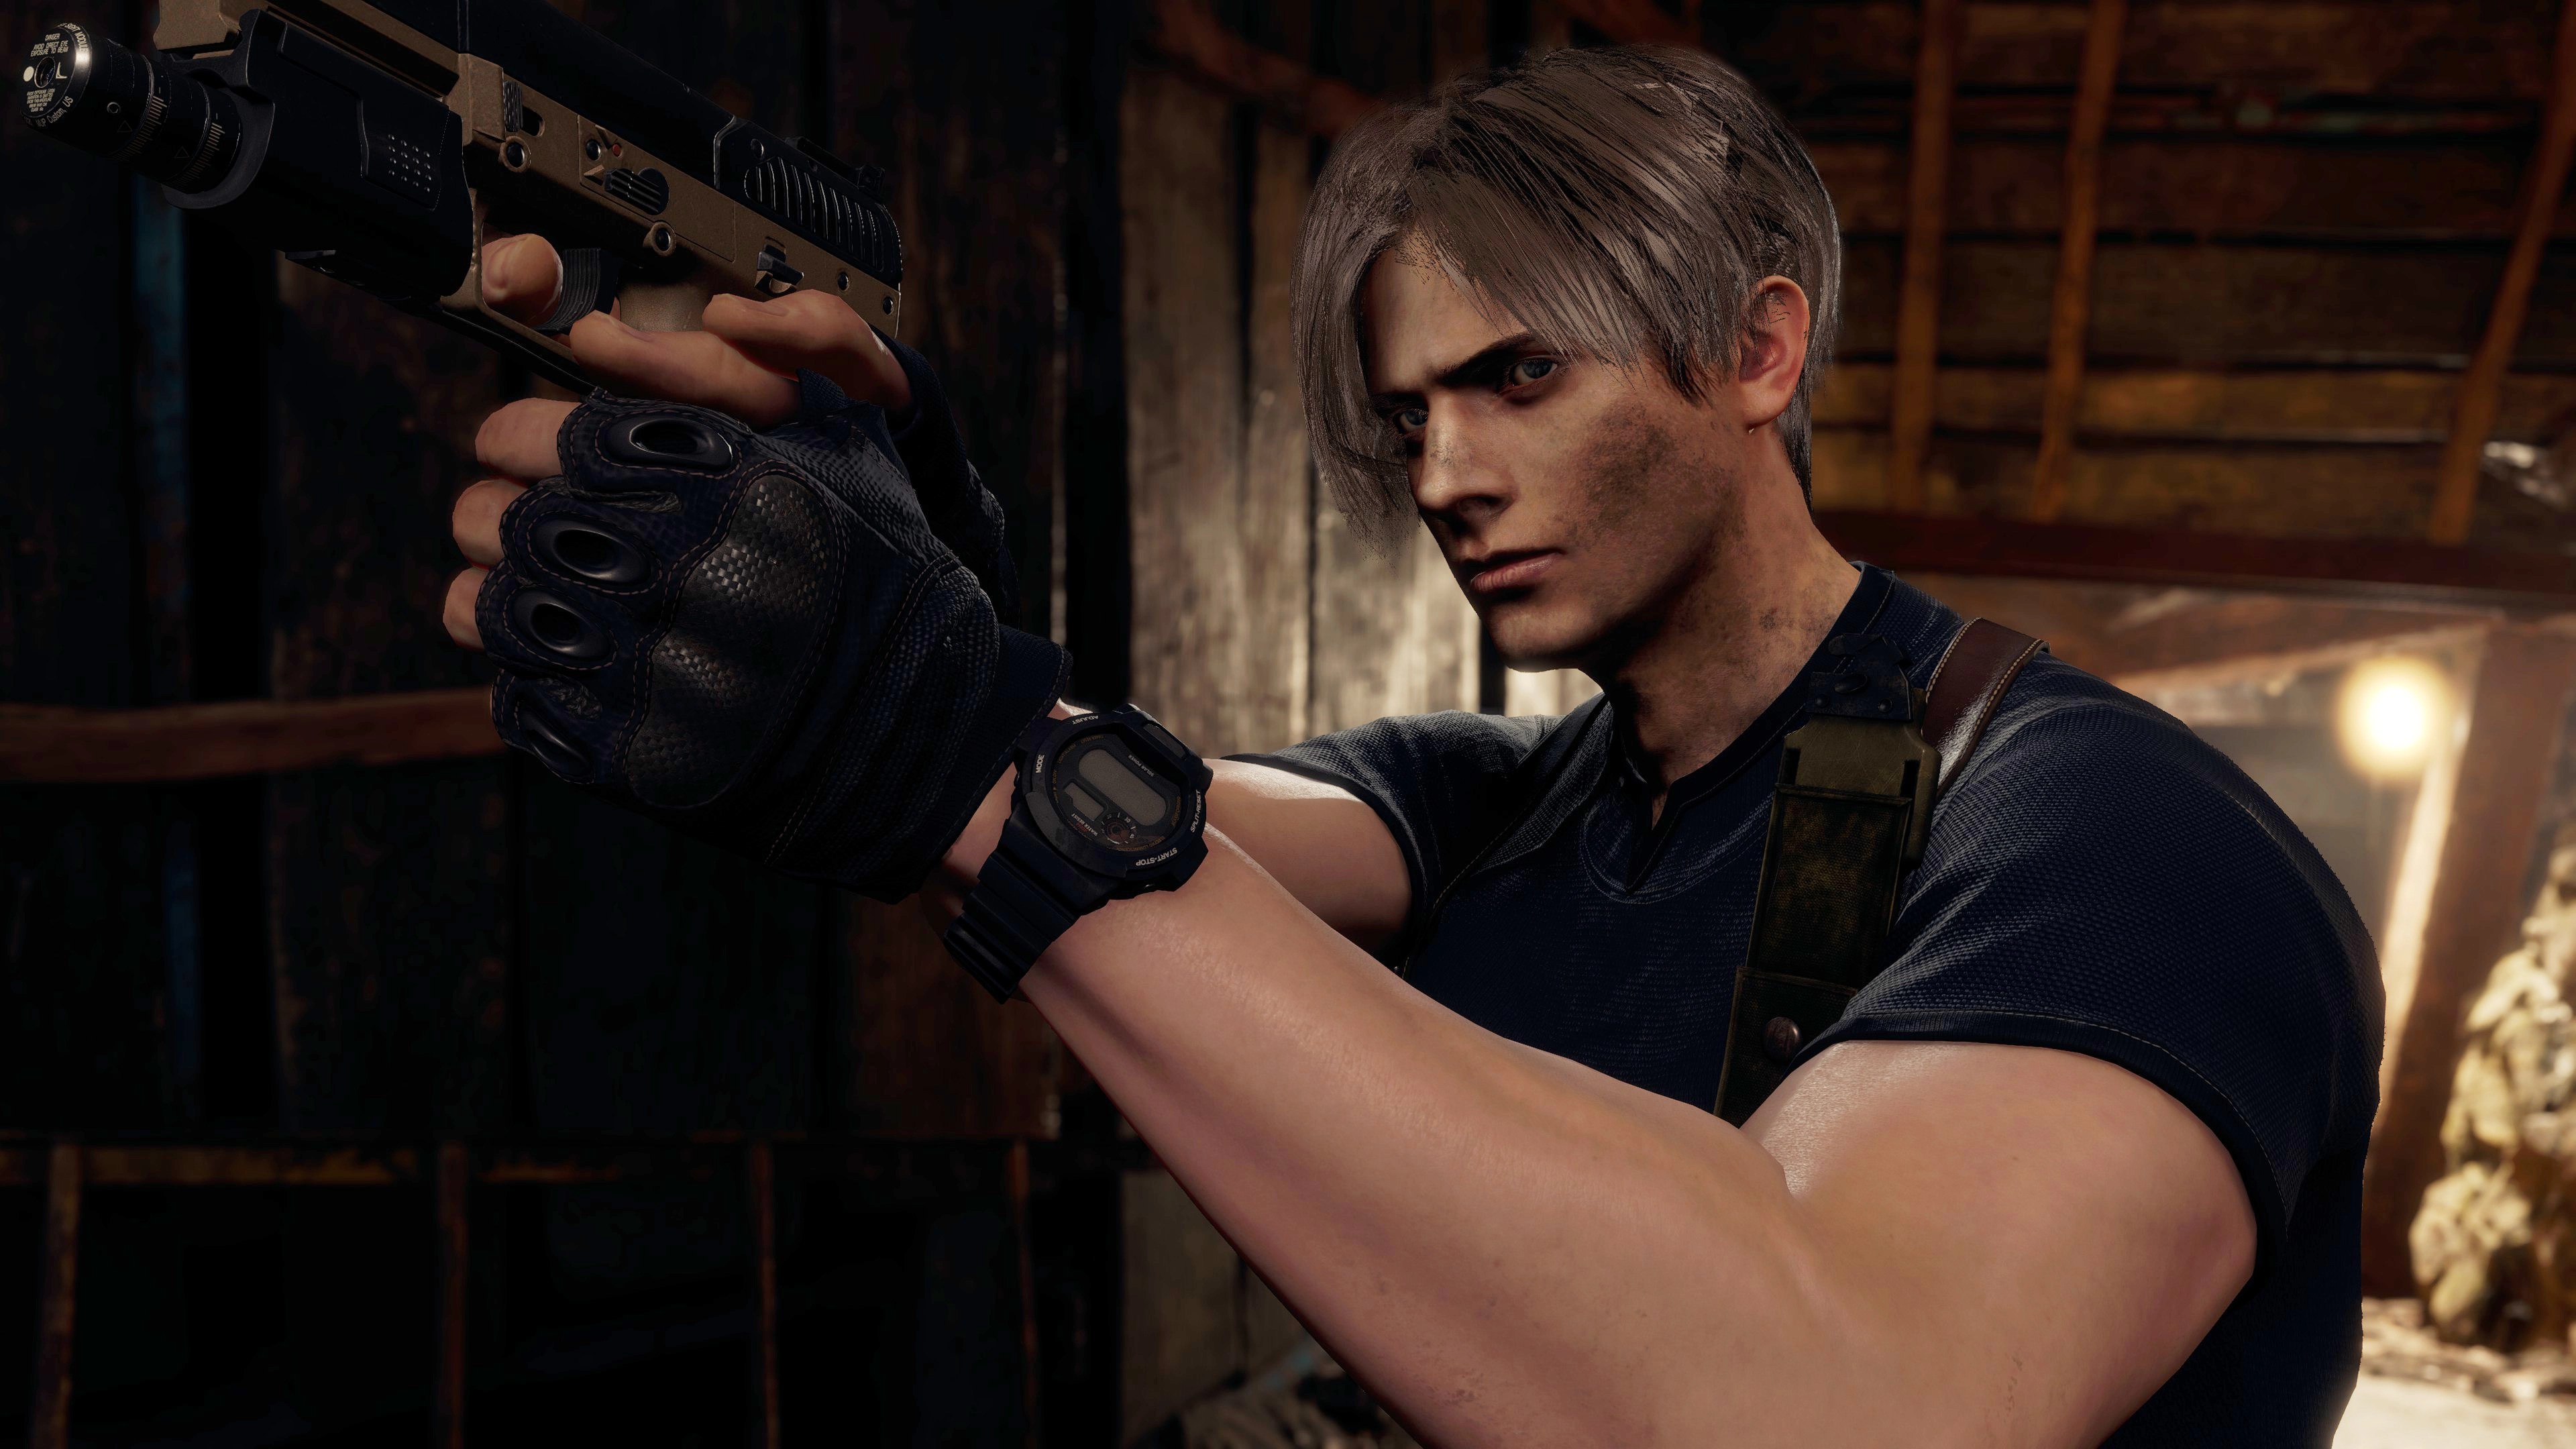 Download 'Resident Evil' Mods for Left 4 Dead 2 